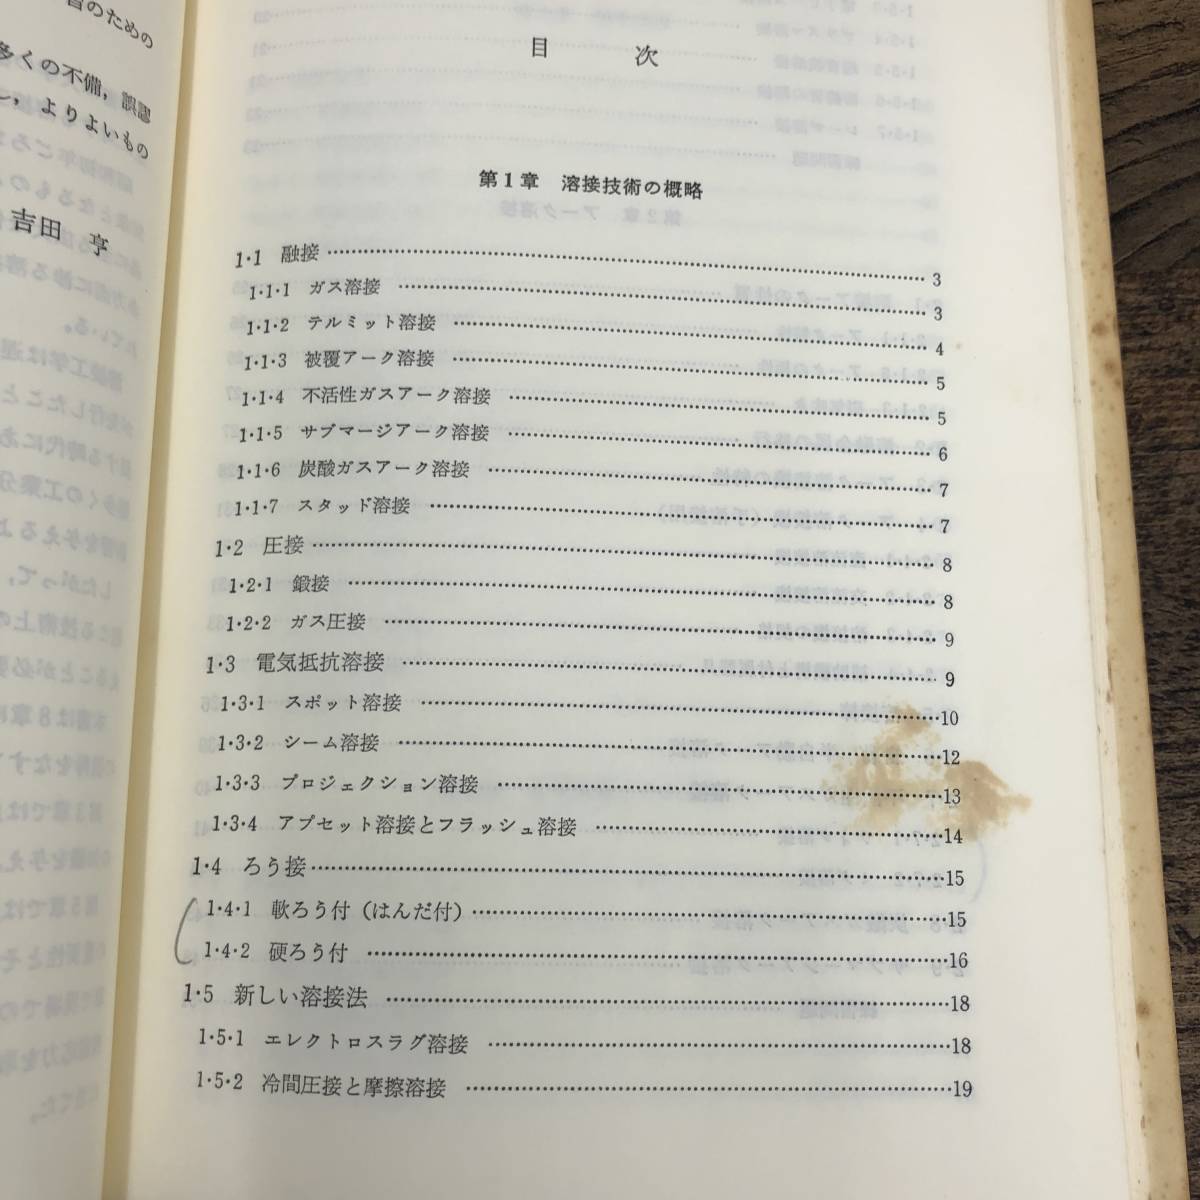 G-6022# welding . theory # Yoshida ./ work # engineering books # Heisei era 5 year 3 month 10 day no. 5 version 